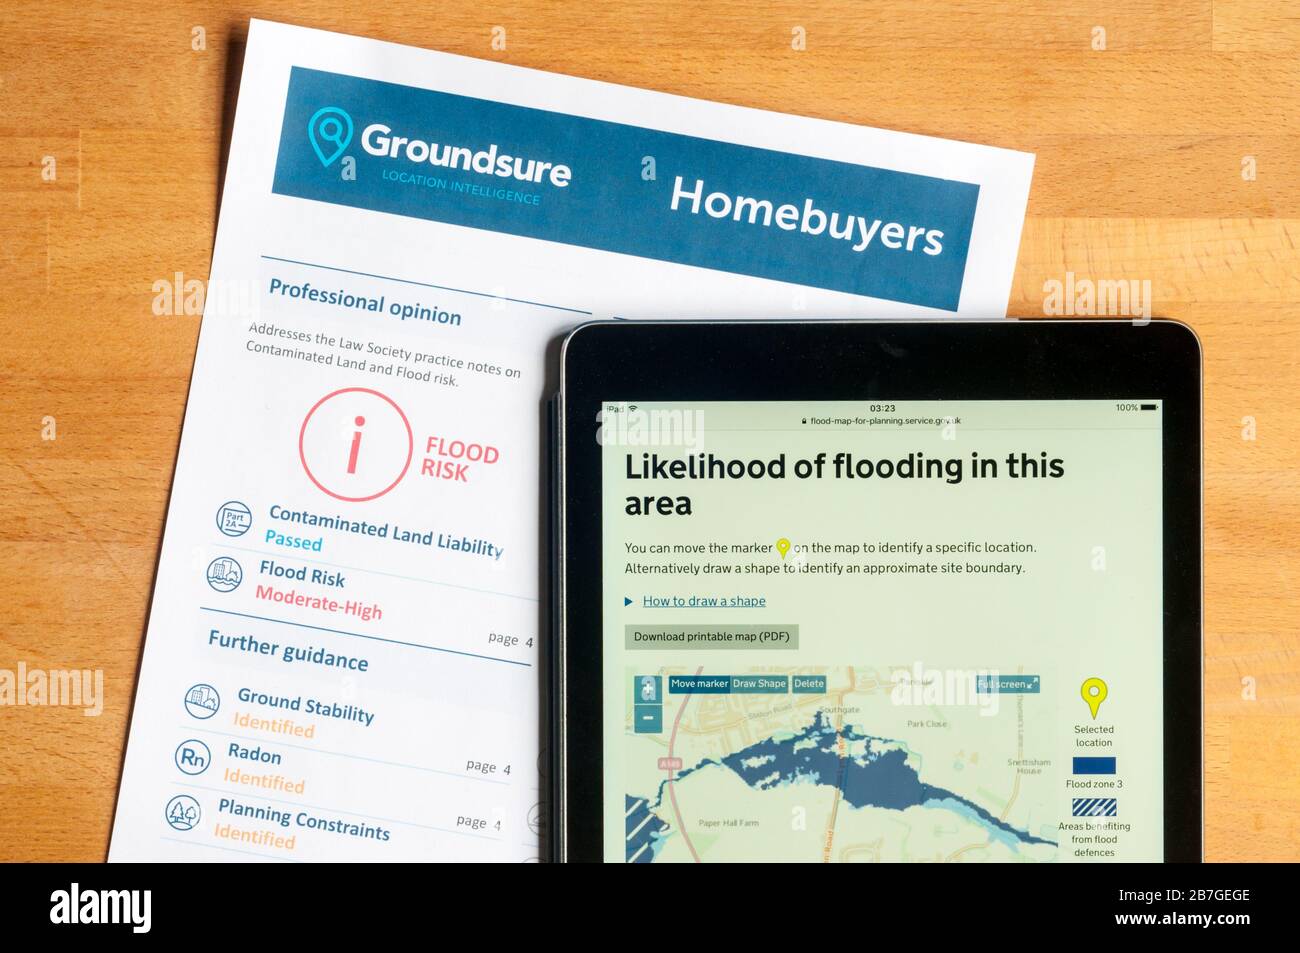 Valutazione del rischio di alluvione prima dell'acquisto di una nuova casa - rapporto sul rischio di alluvione e mappa delle alluvioni governative visualizzate sull'ipad. Foto Stock